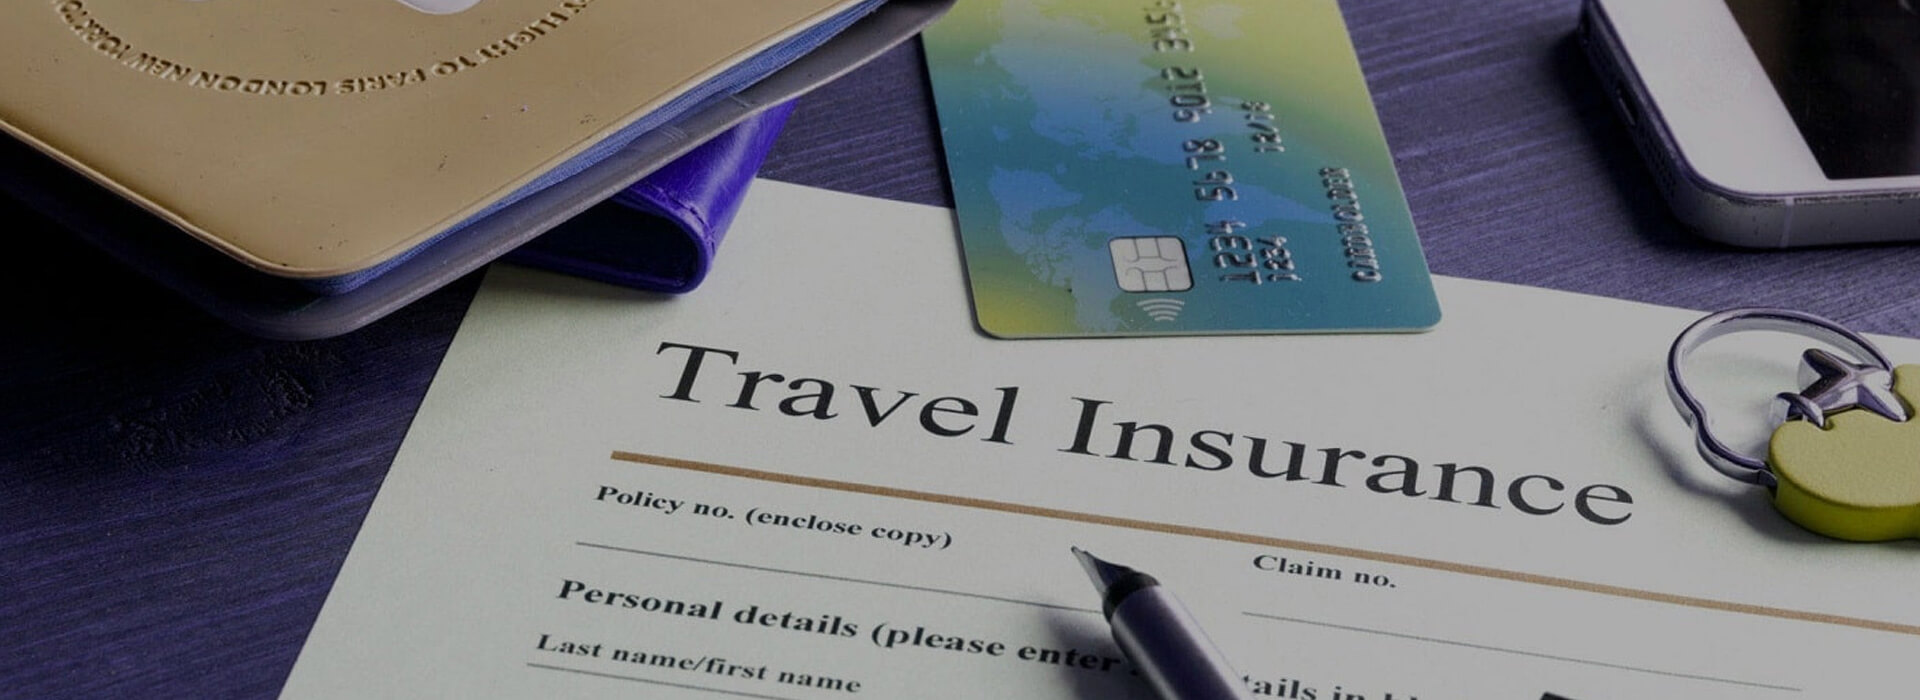 Rwanda Travel Insurance